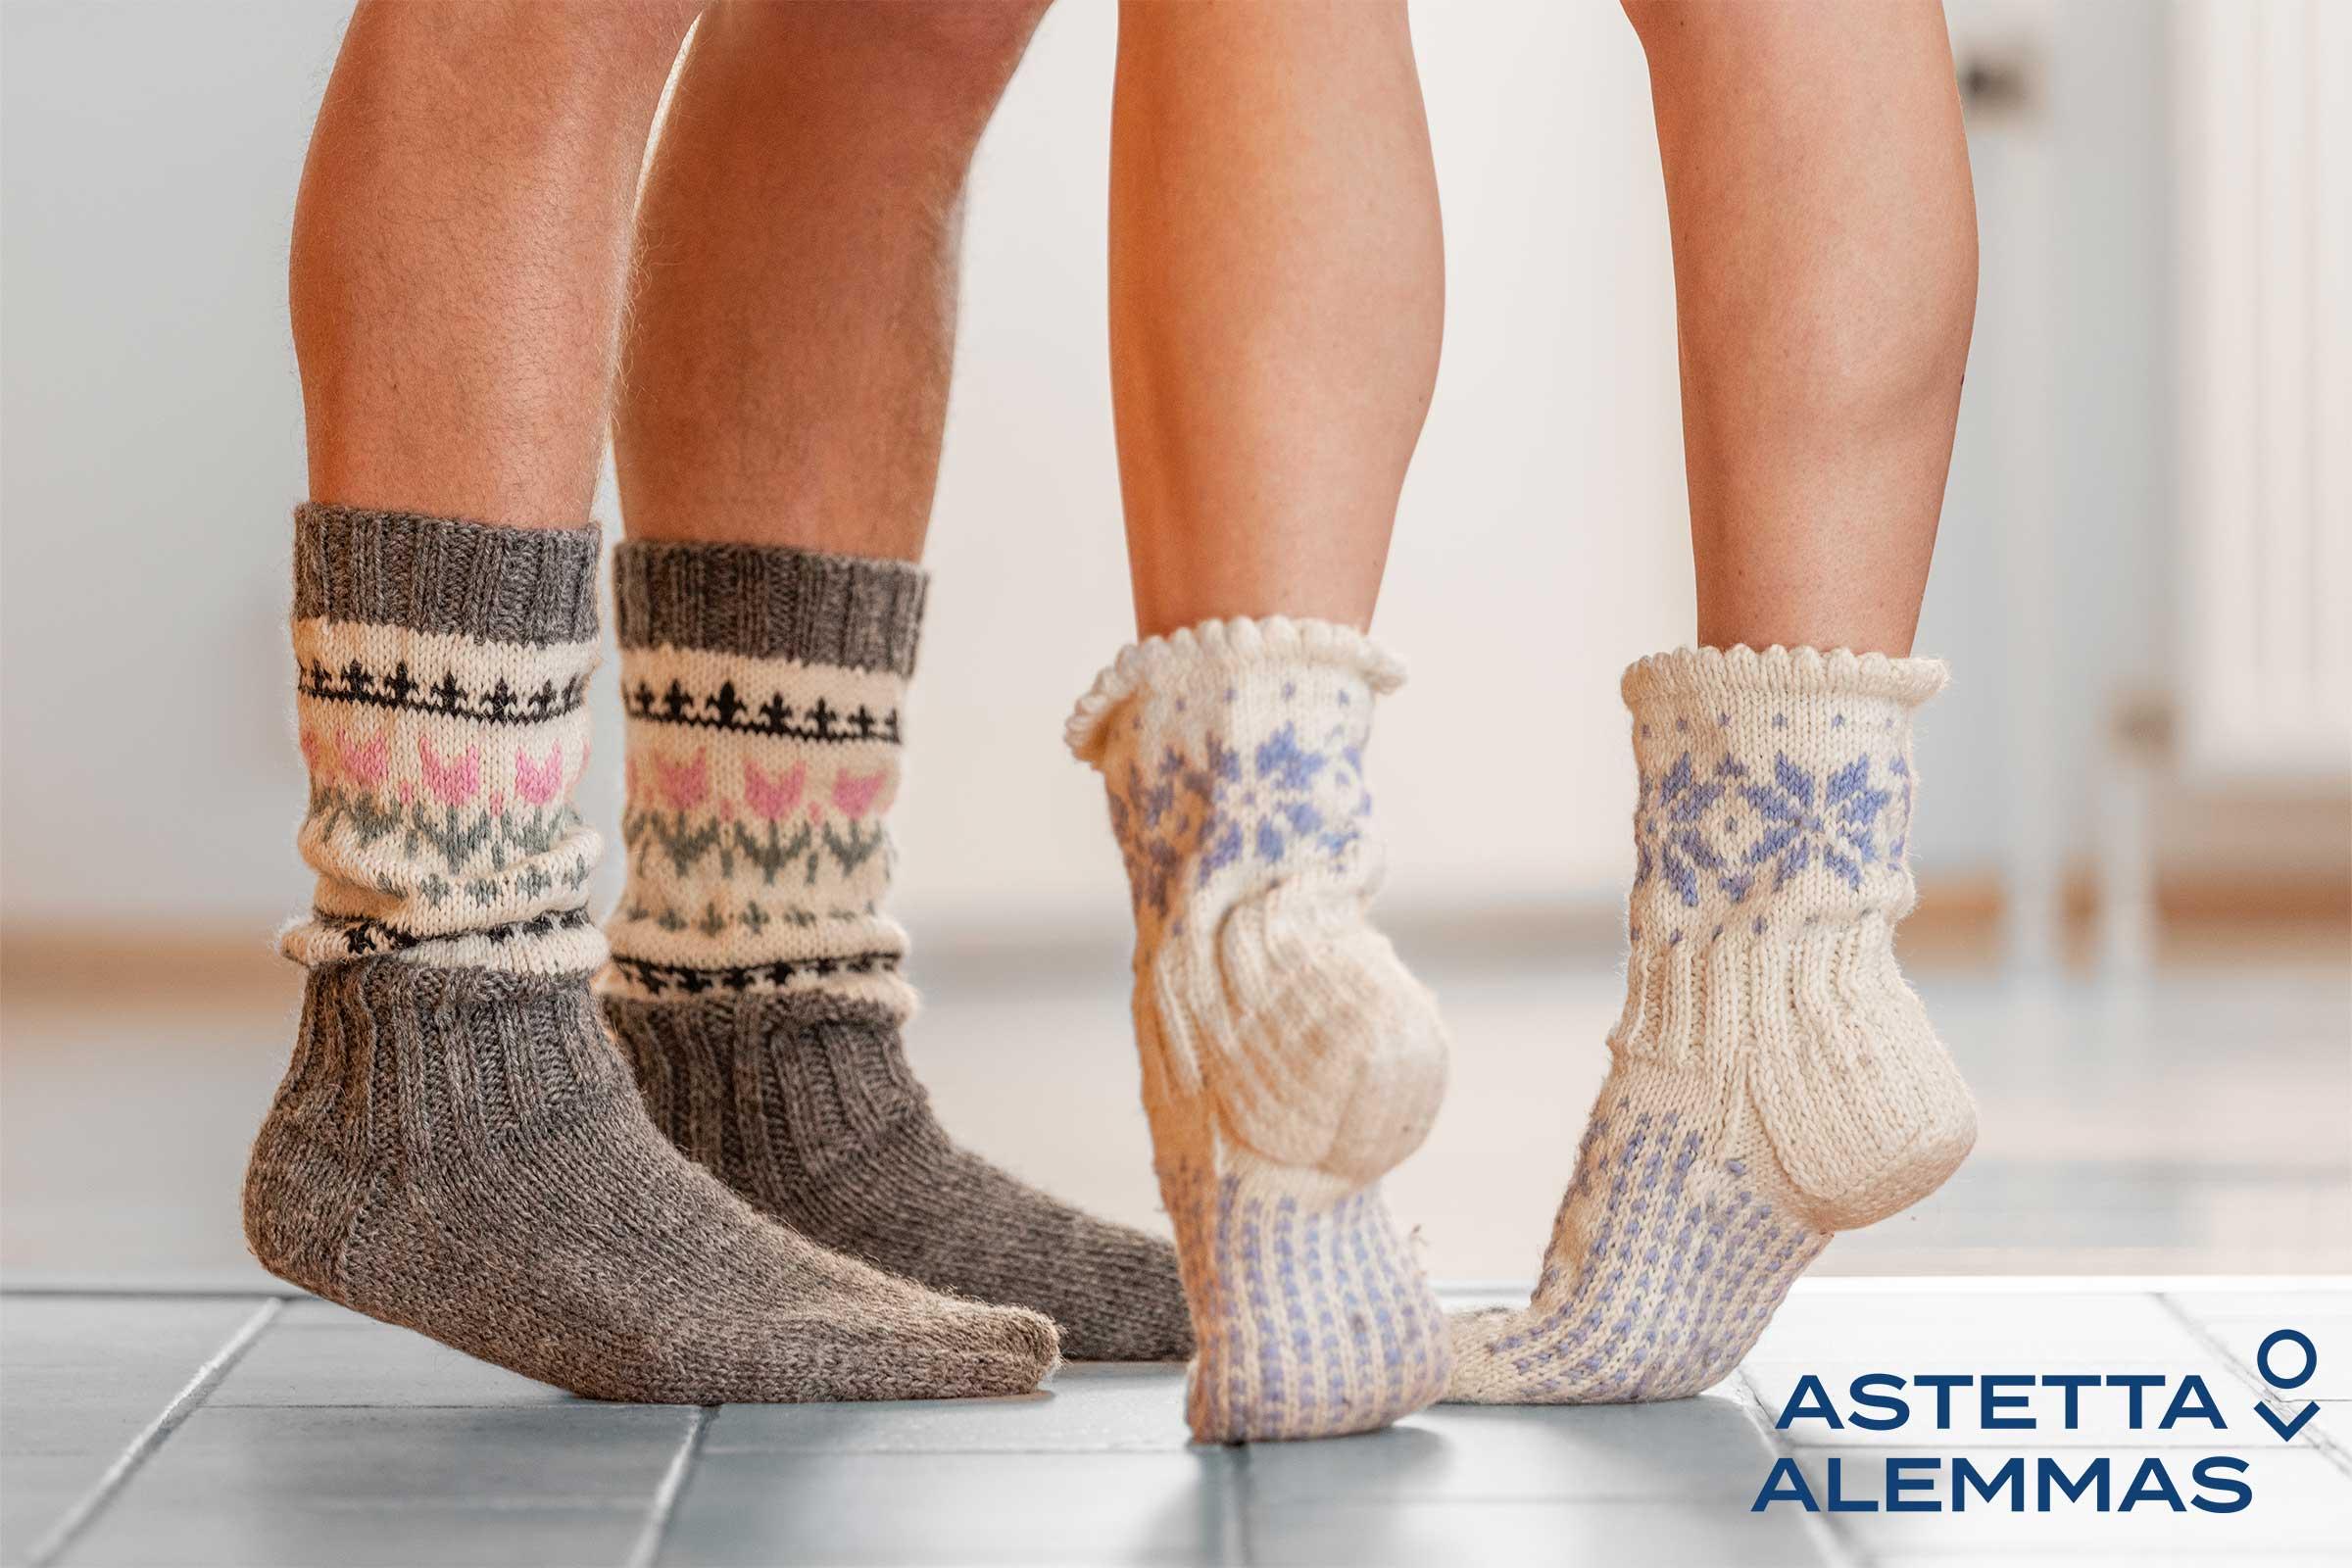 Astetta alemmas -kampanjan valokuva, jossa on kaksi henkilö villasukat jalassa sekä Astetta alemmas -logo.